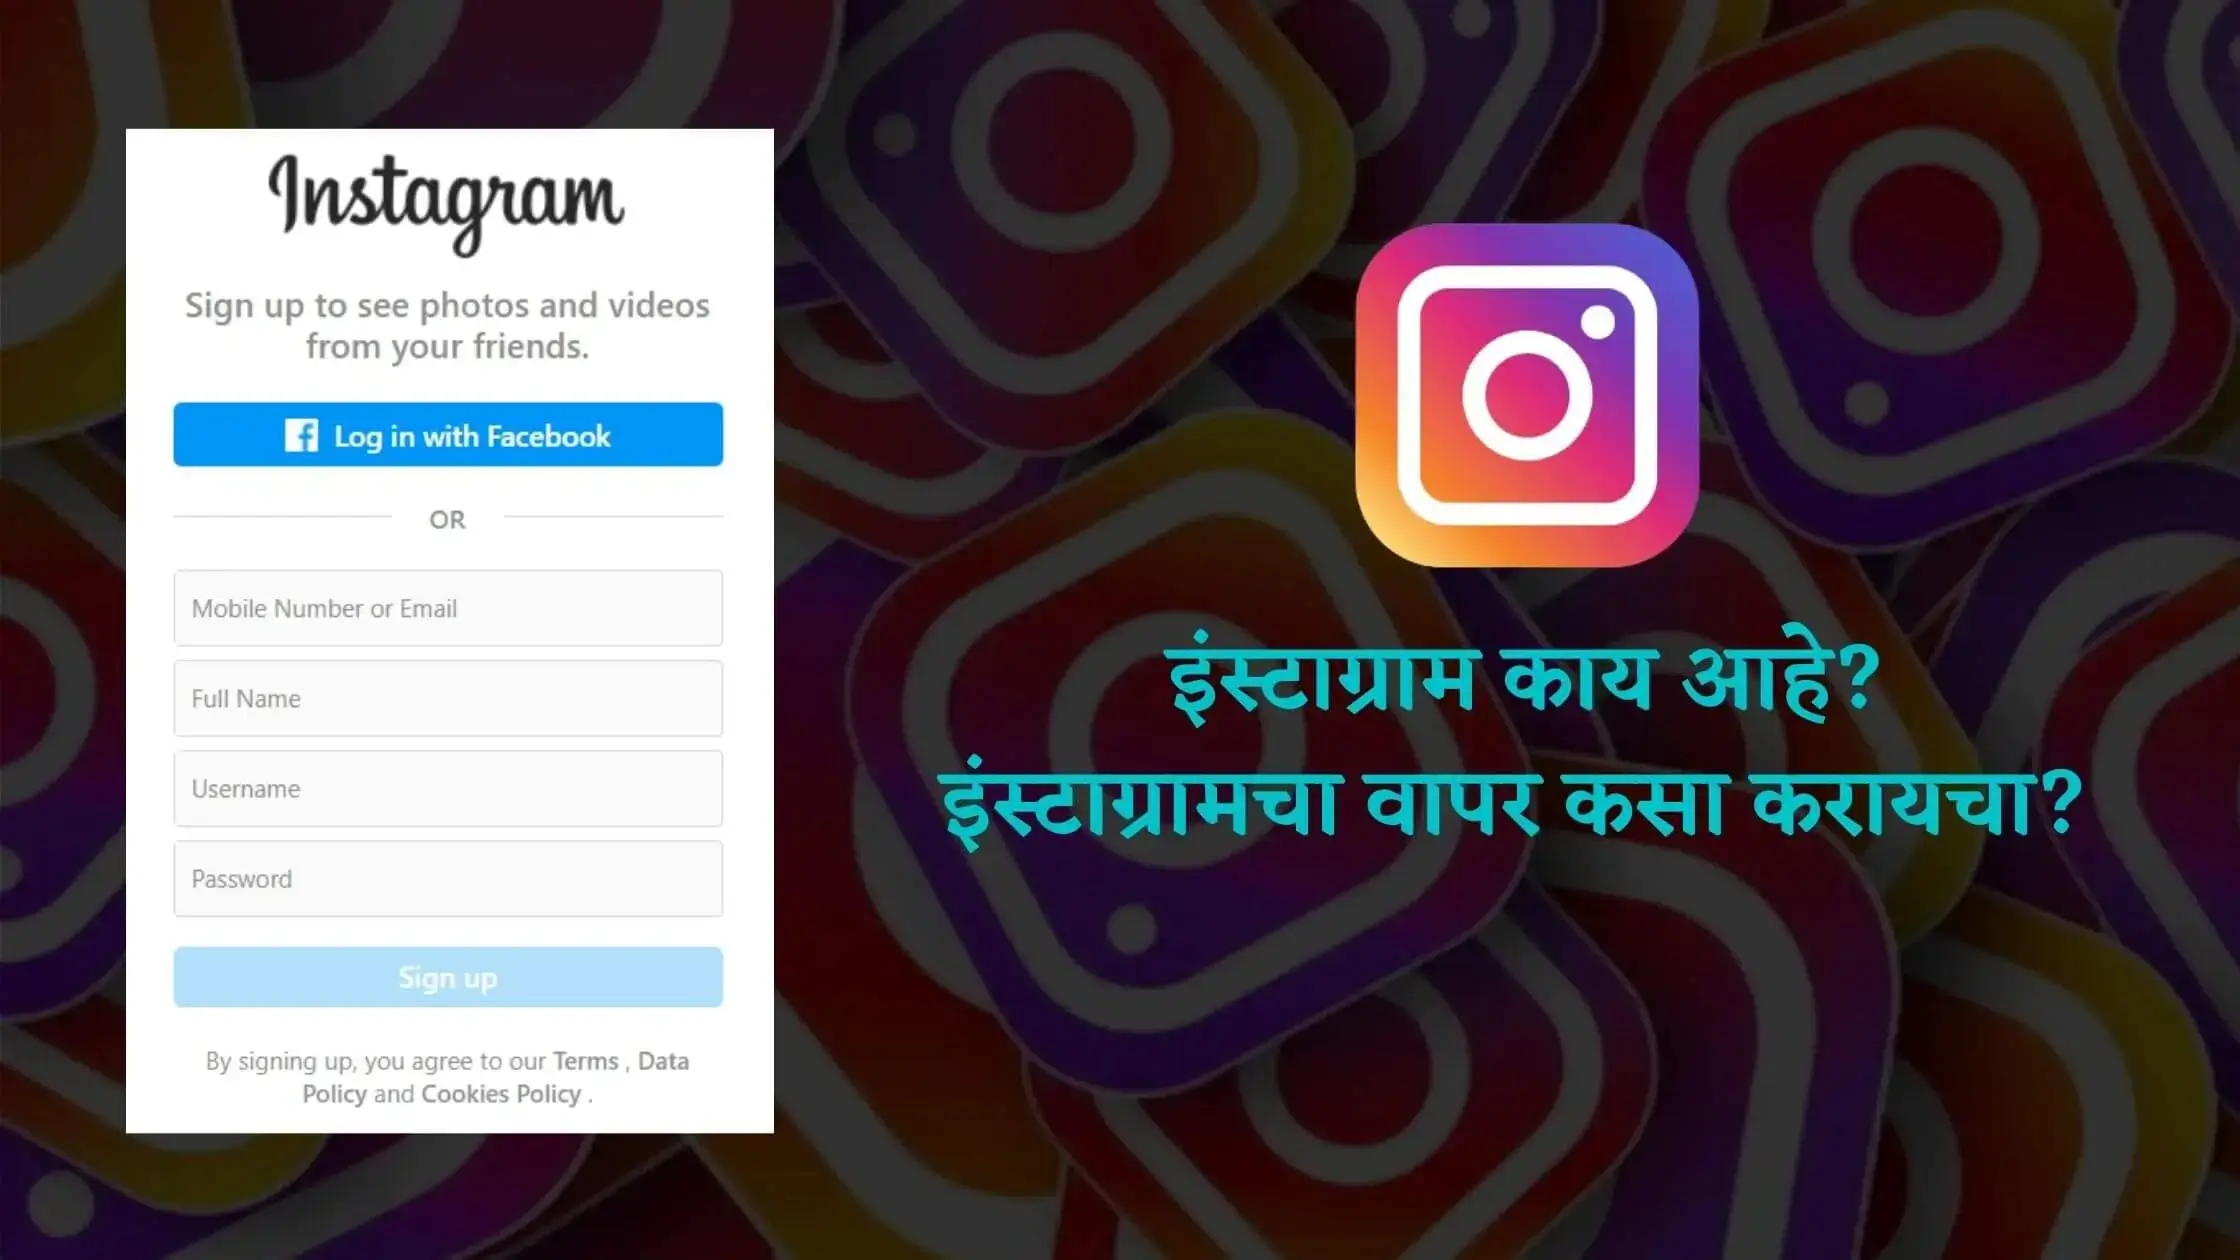 Instagram information in marathi